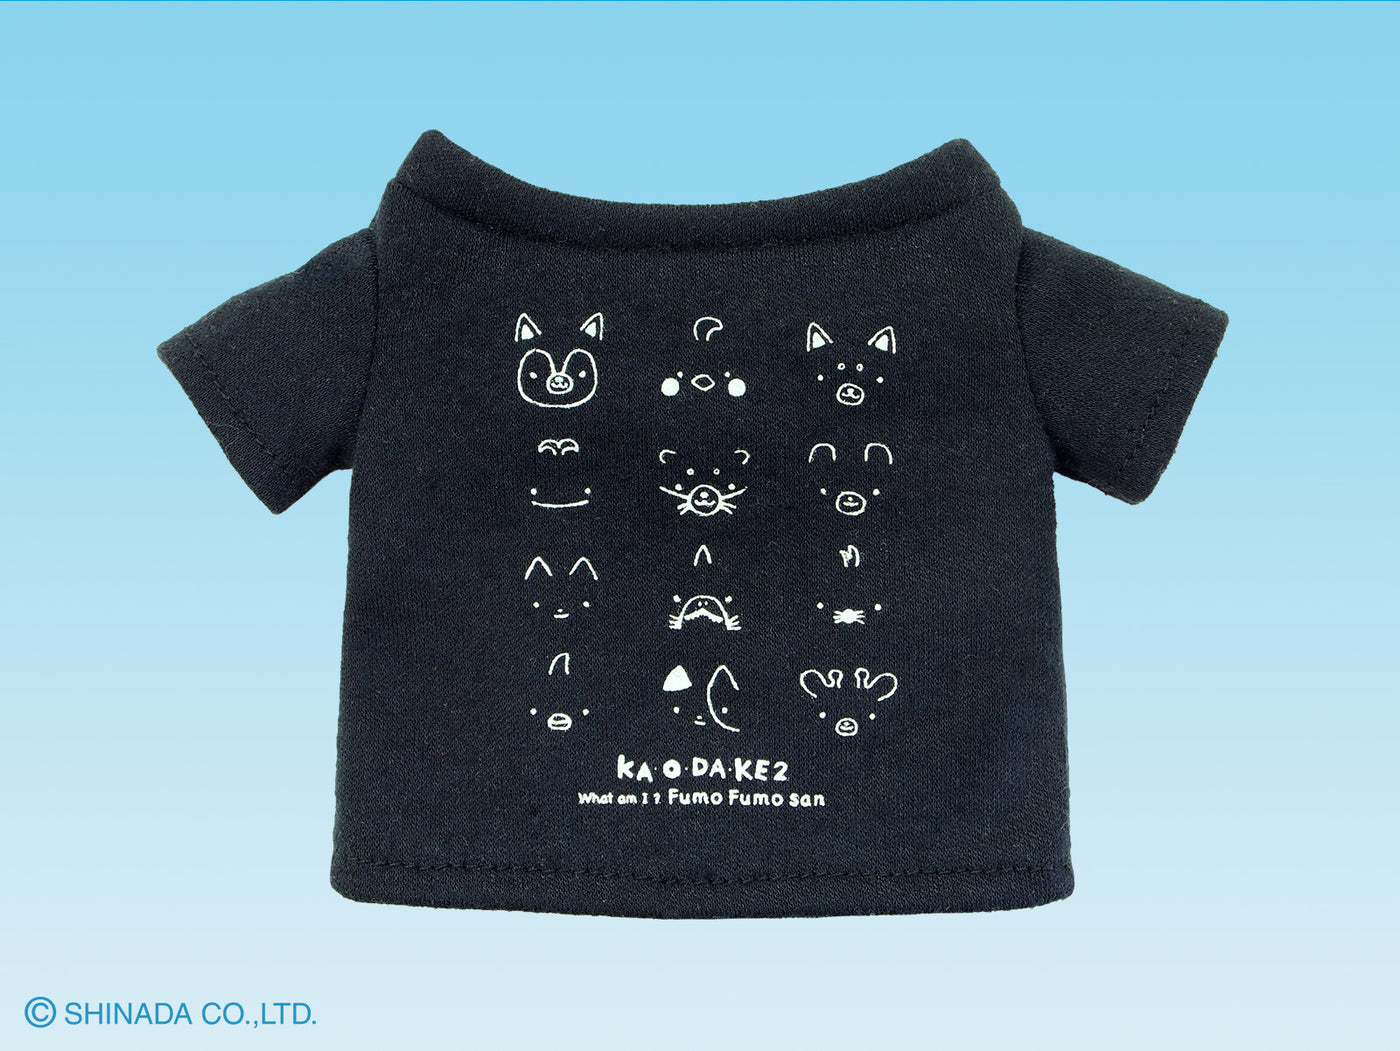 Mini T-shirt for Fumofumo San Plushies (various colours)